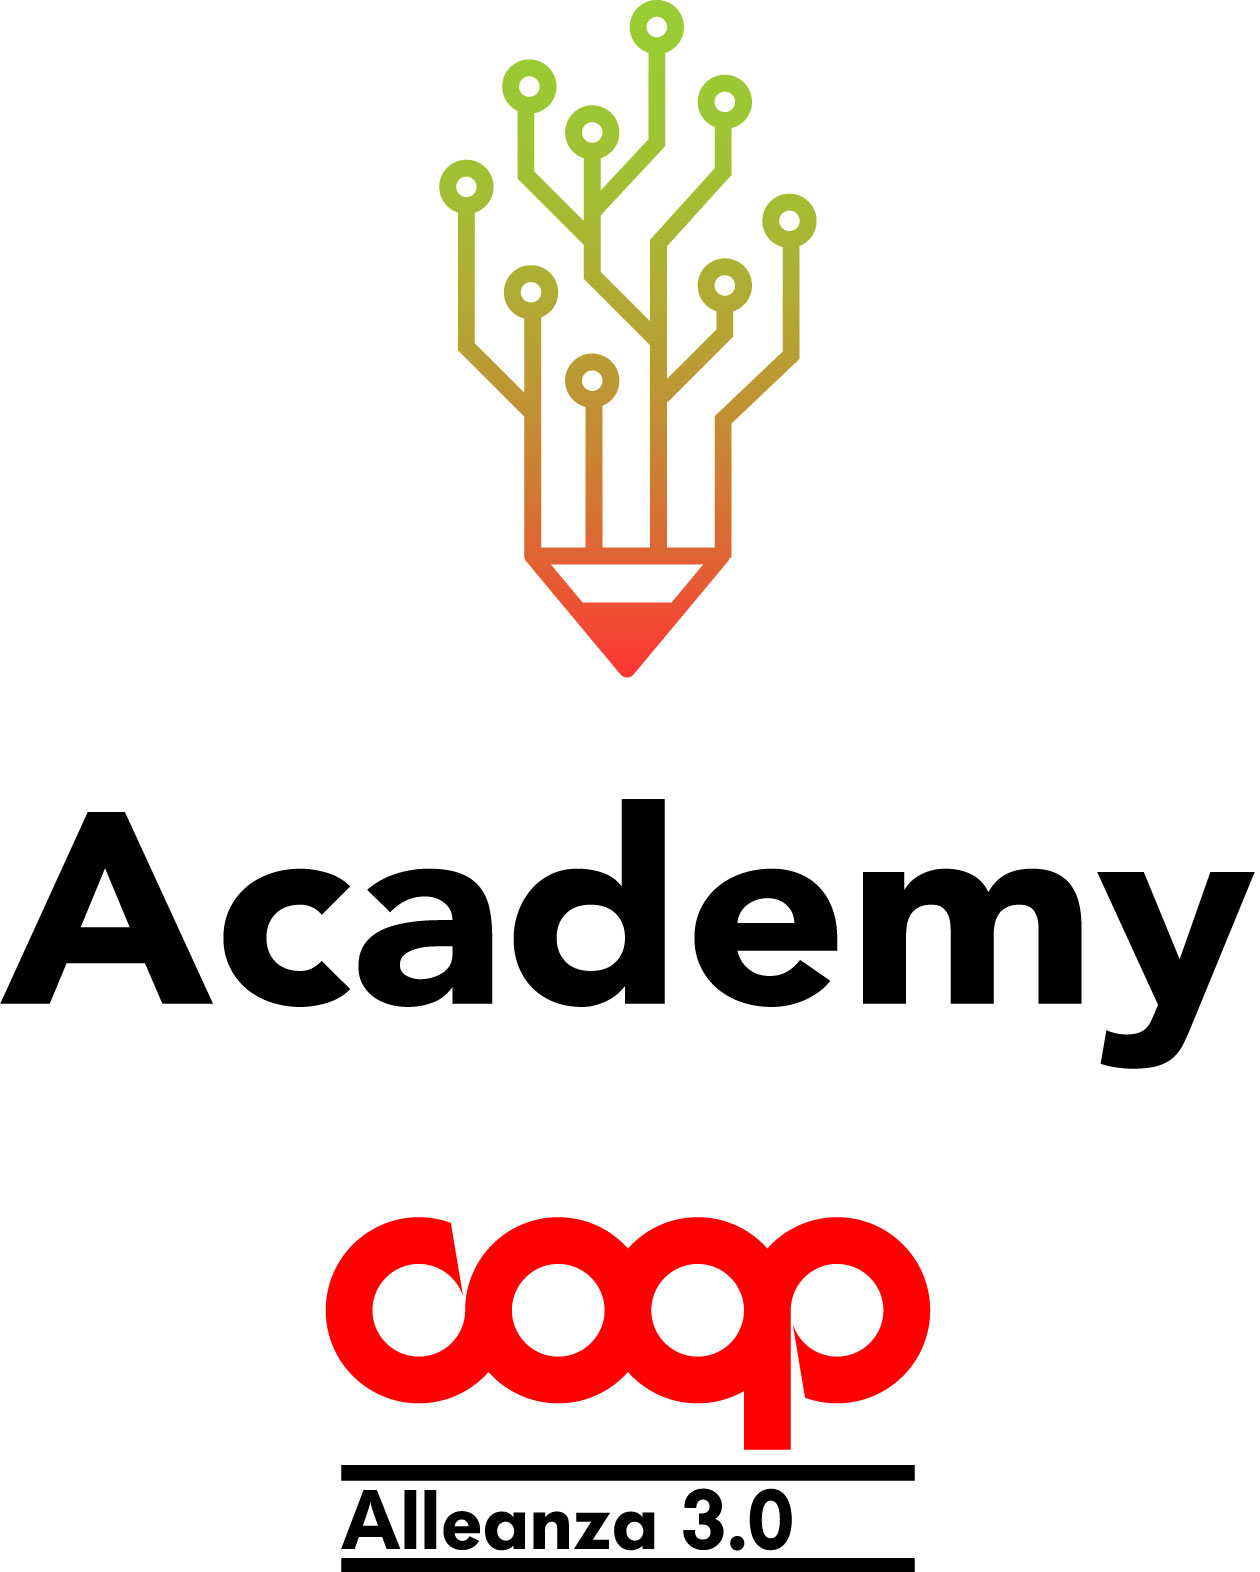 Nasce la Corporate Academy Coop Alleanza 3.0:  una grande operazione culturale e formativa  aperta ai 21.000 dipendenti dei punti vendita e di sede